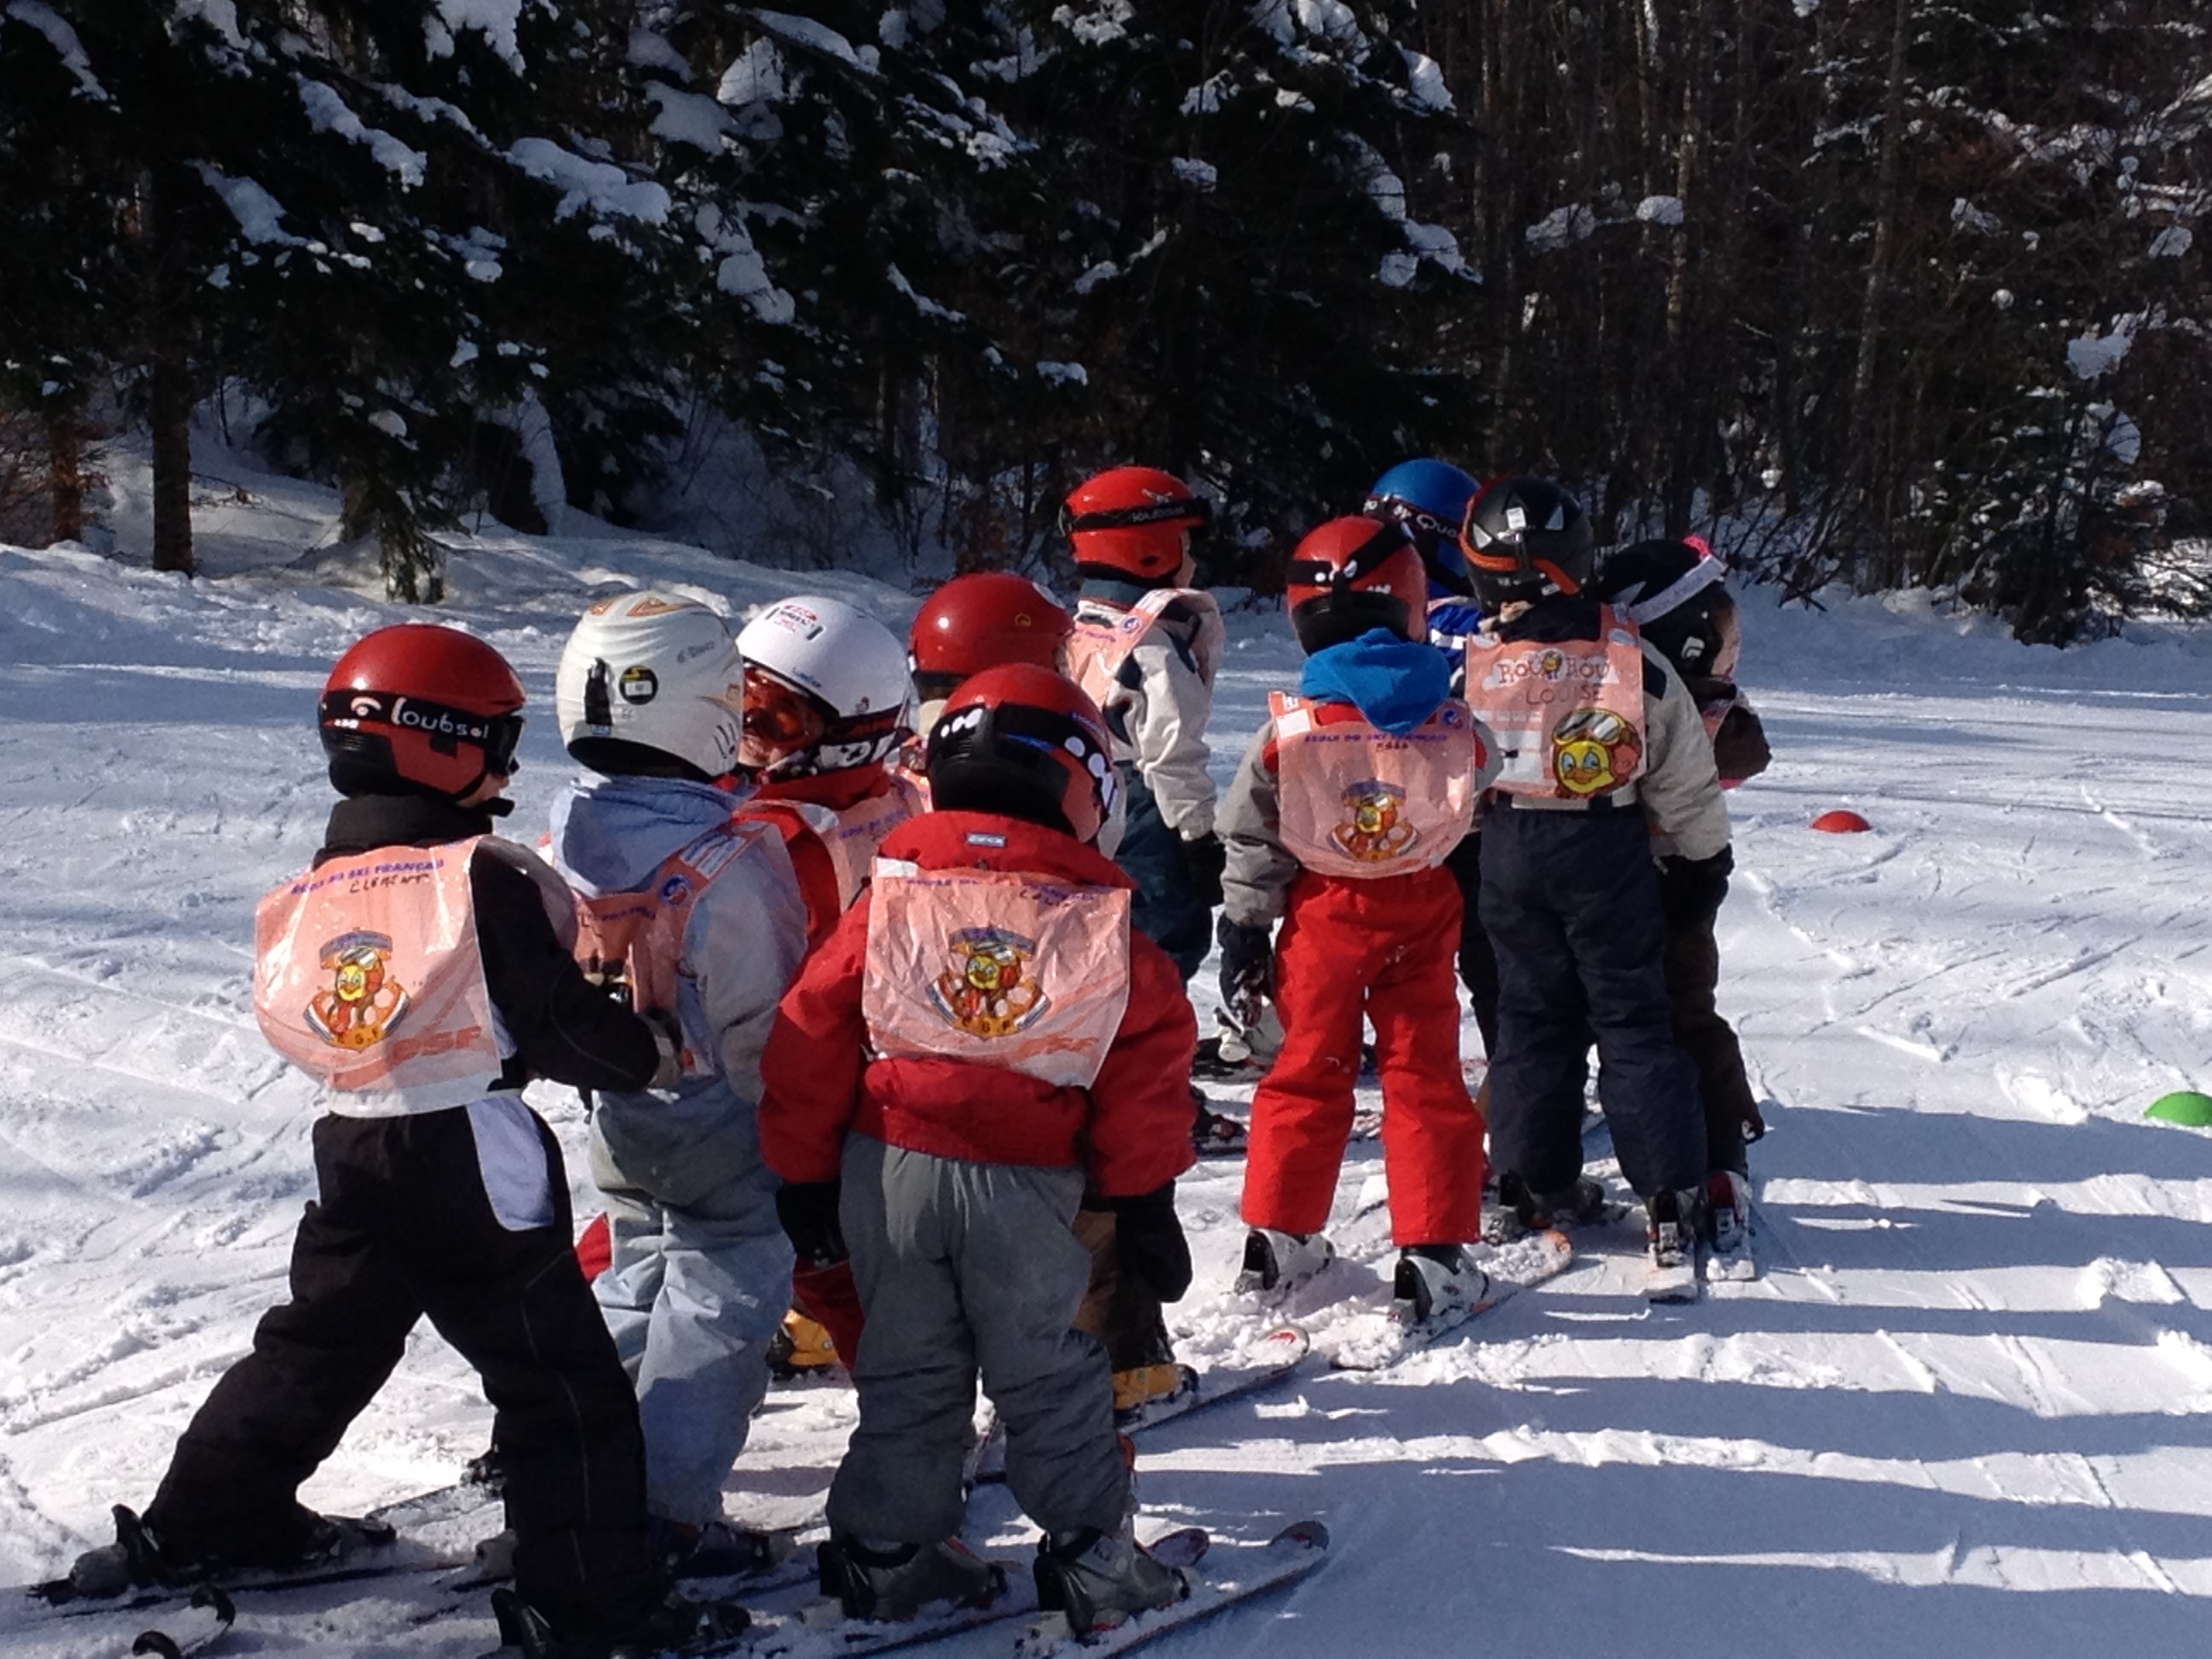 French ski school